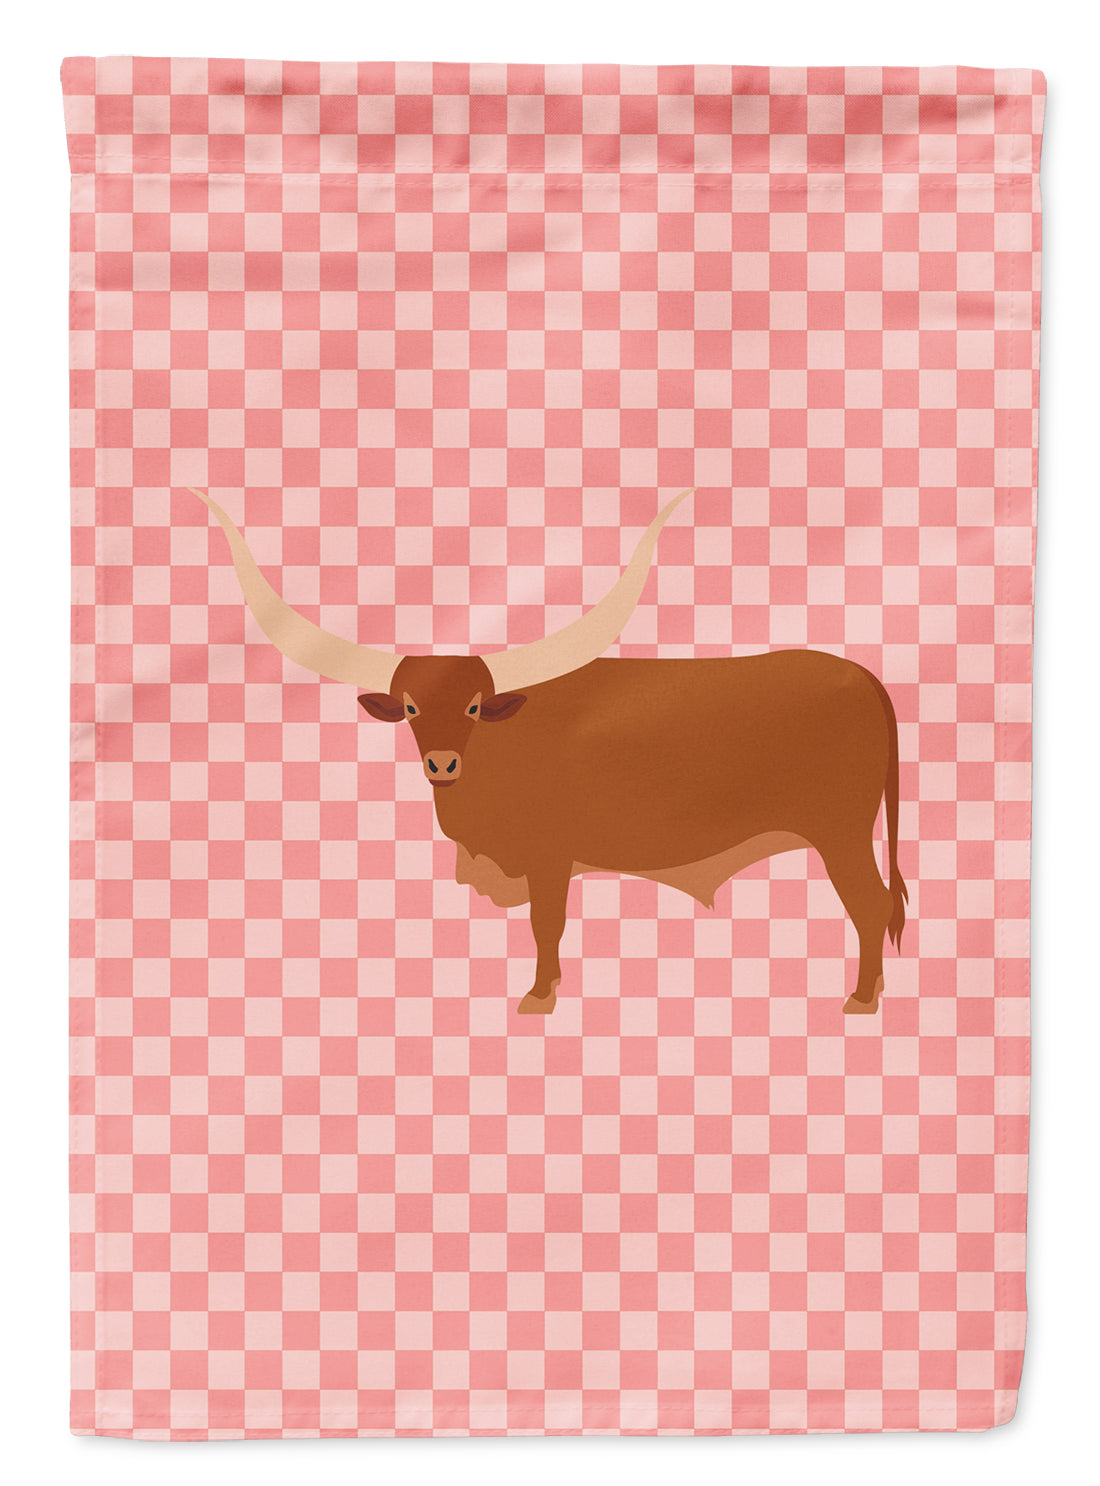 Ankole-Watusu Cow Pink Check Flag Garden Size